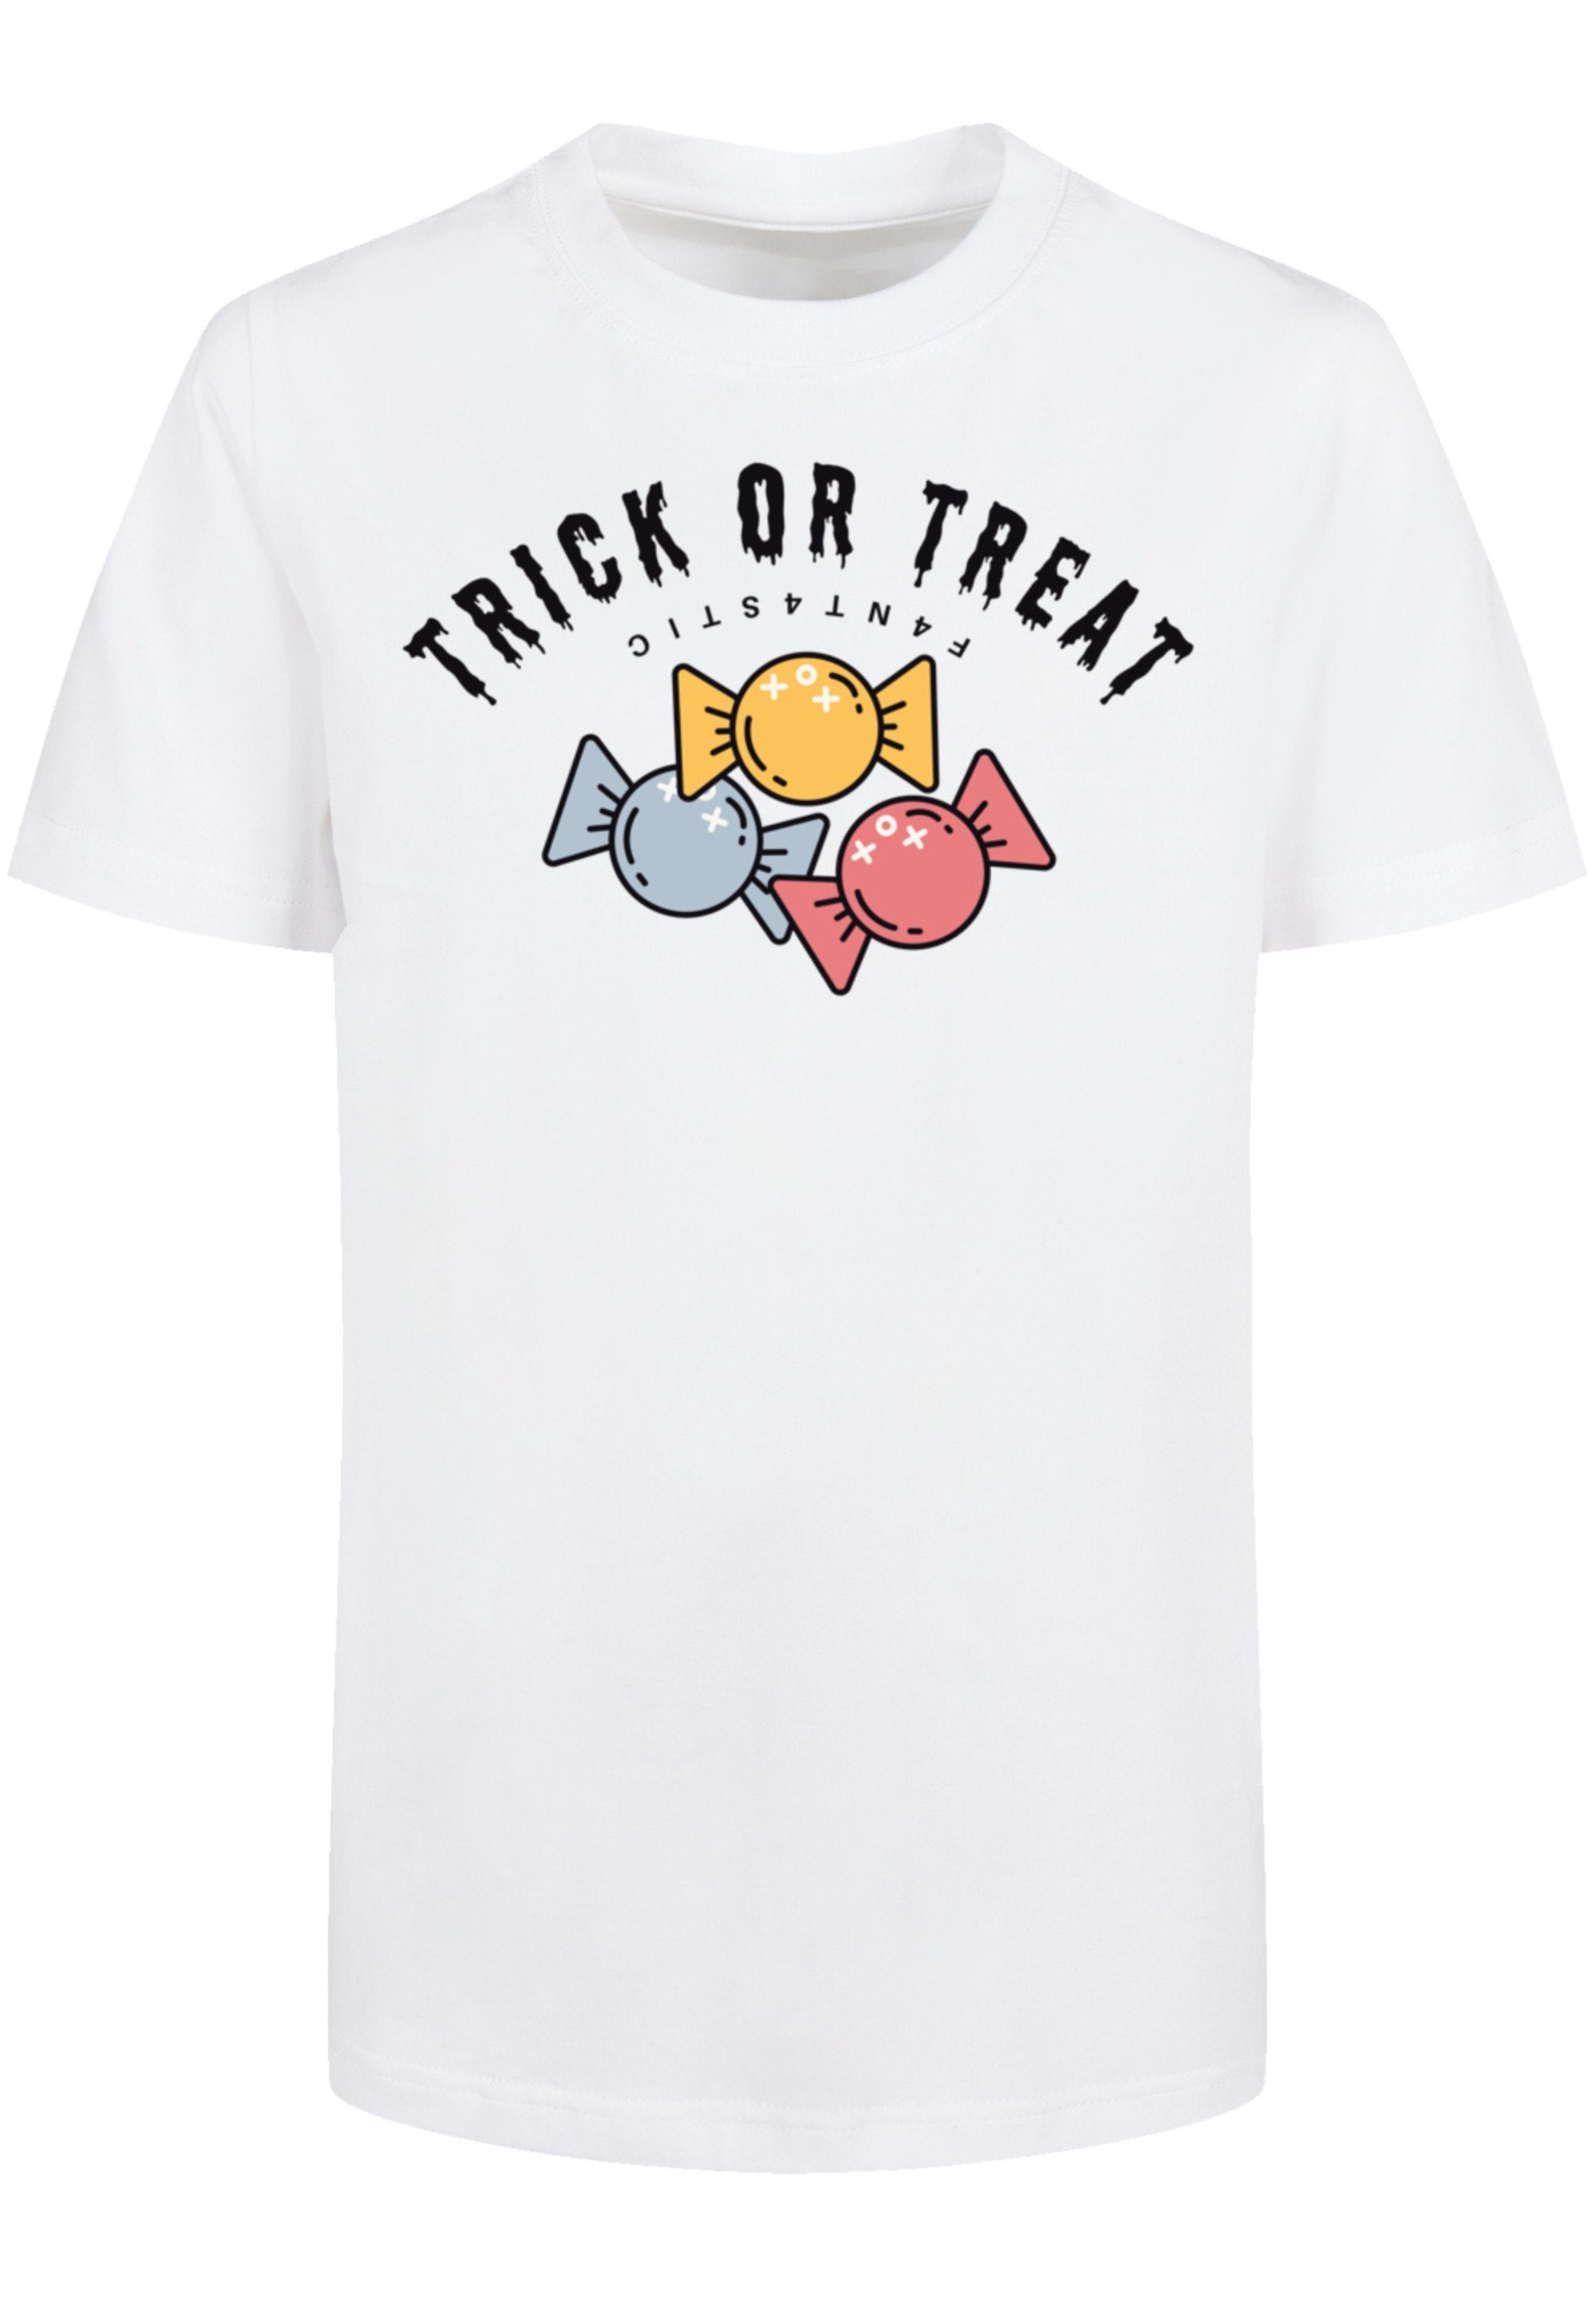 Or weiß Treat F4NT4STIC Trick T-Shirt Halloween Print